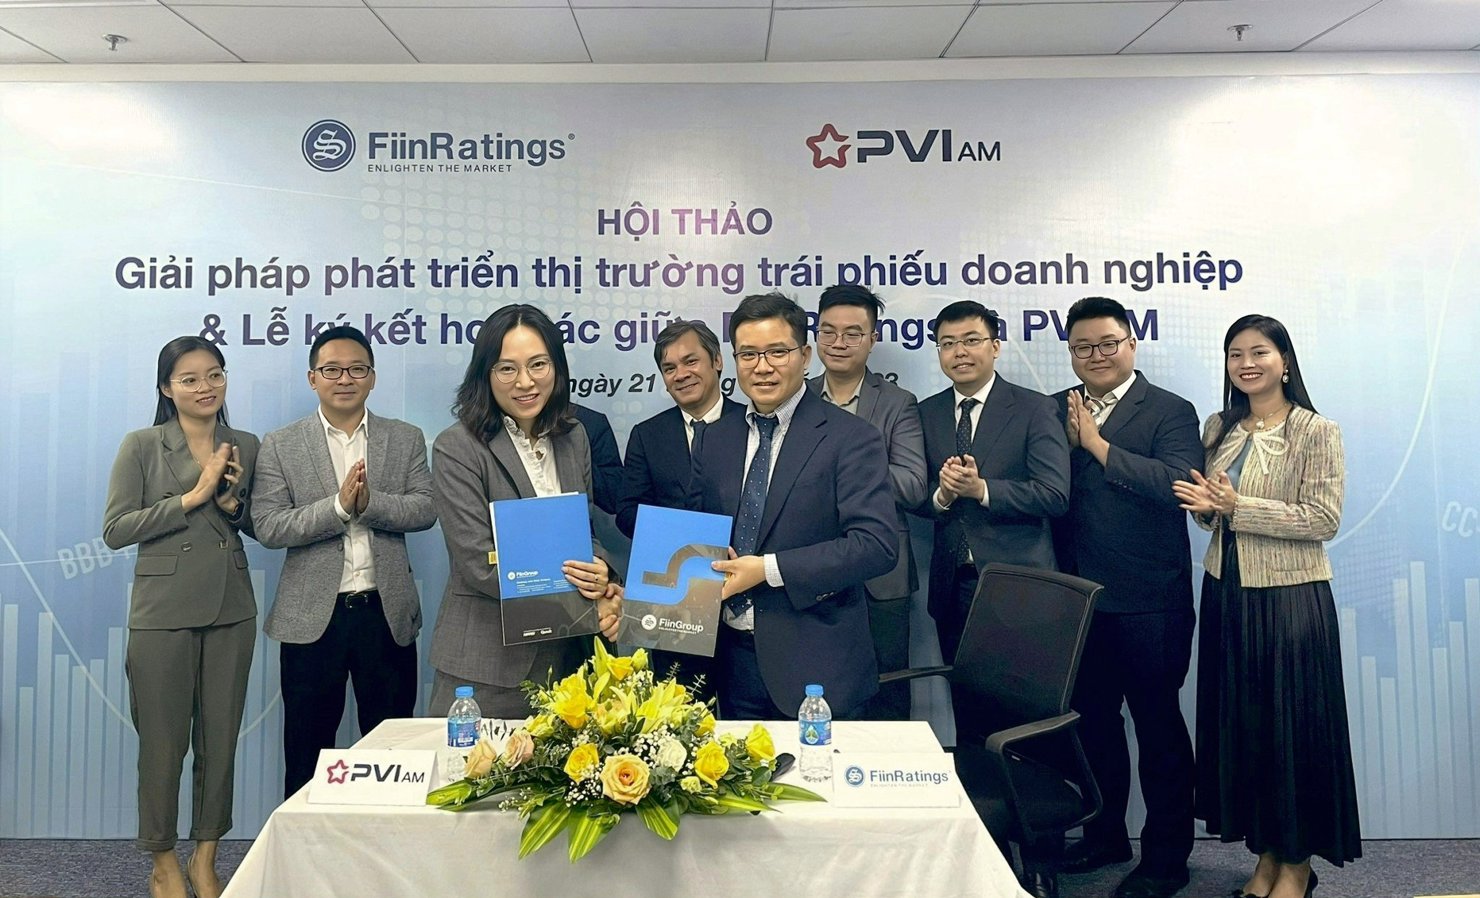 Lễ ký kết hợp tác giữa FiinRatings và PVIAM.